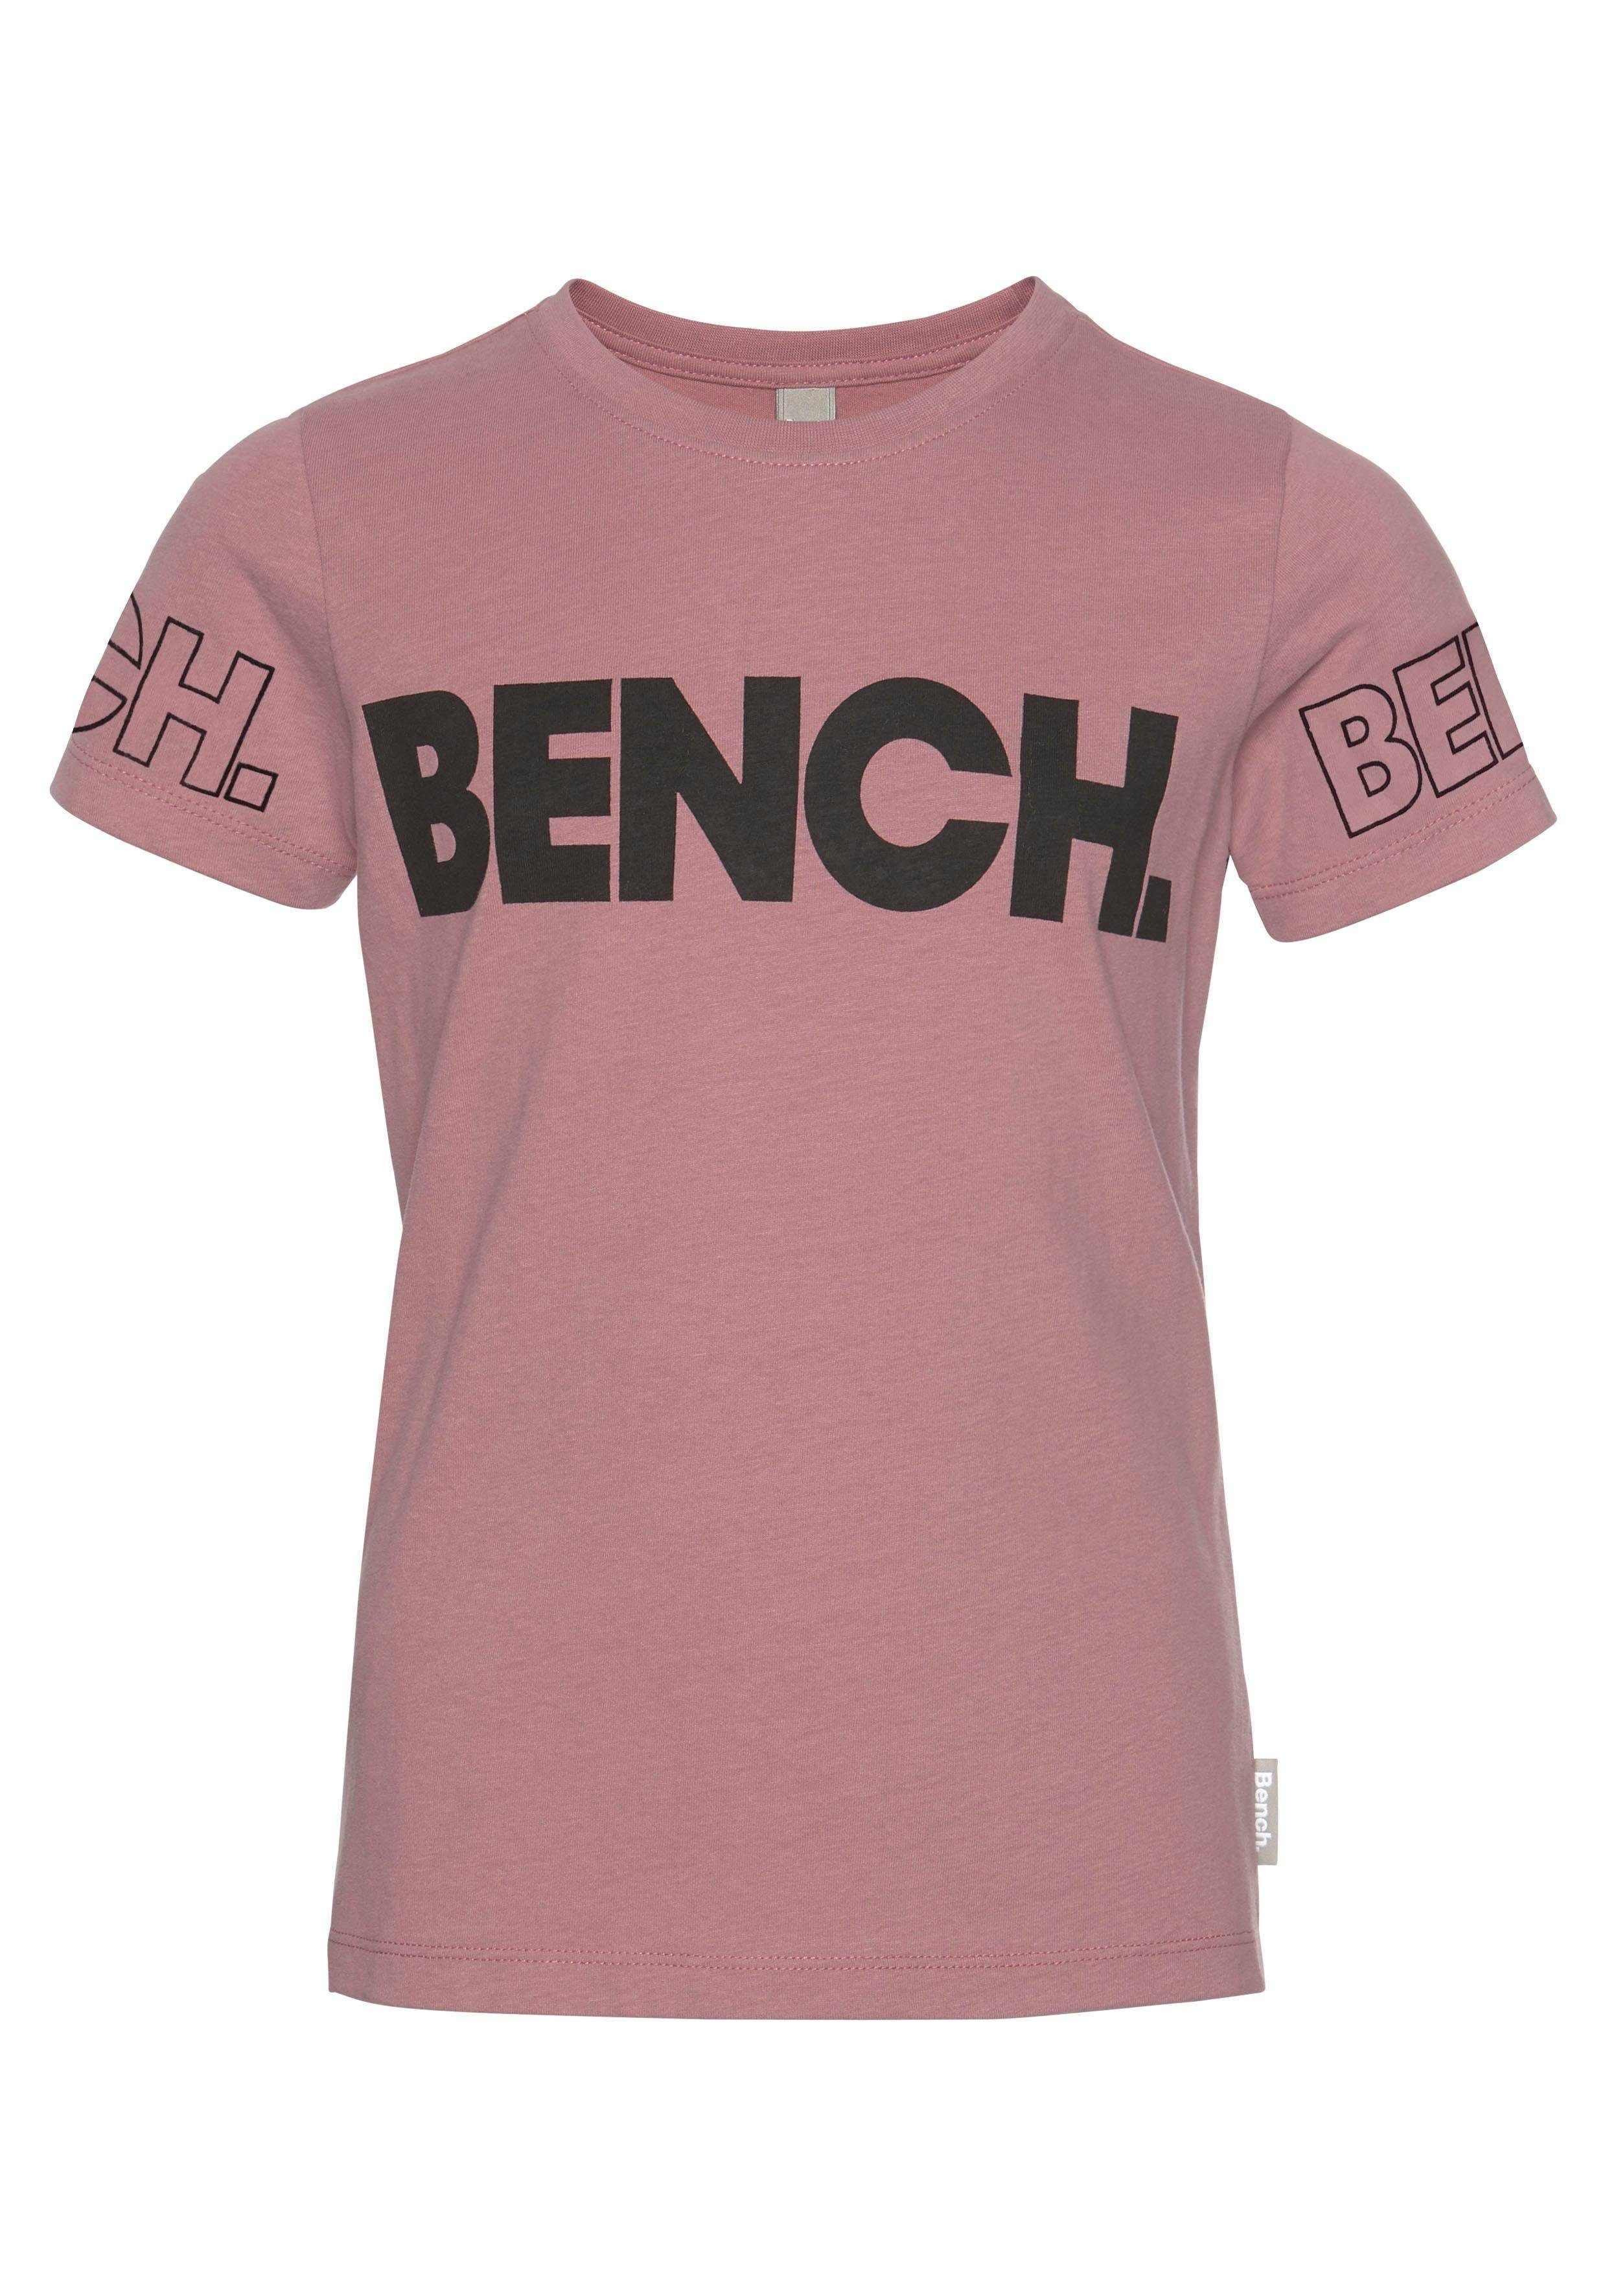 T-Shirt Bench. Bench-Logo-Drucken mit